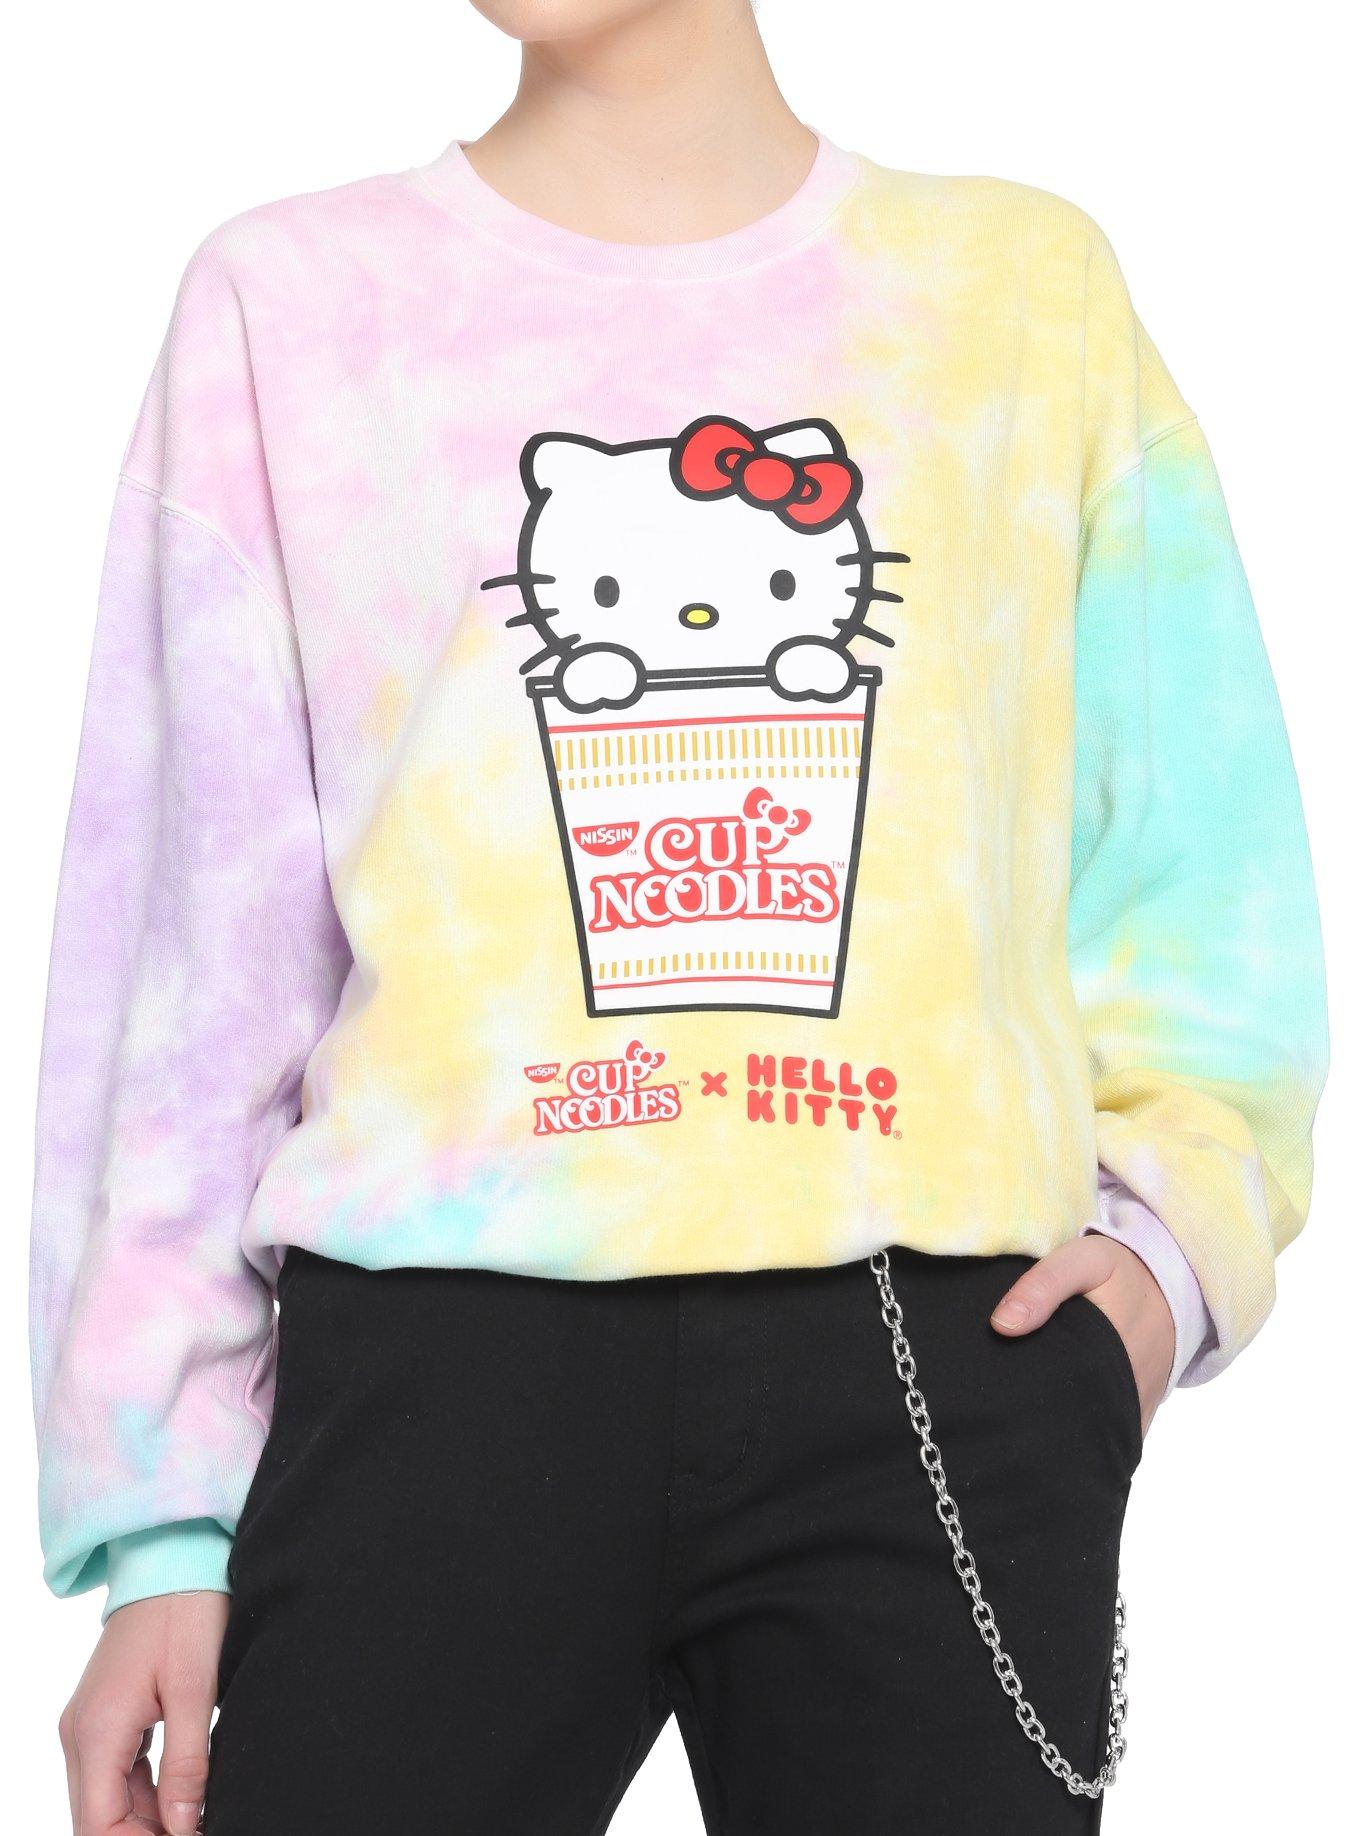 Nissin Cup Noodles X Hello Kitty Tie-Dye Girls Sweatshirt